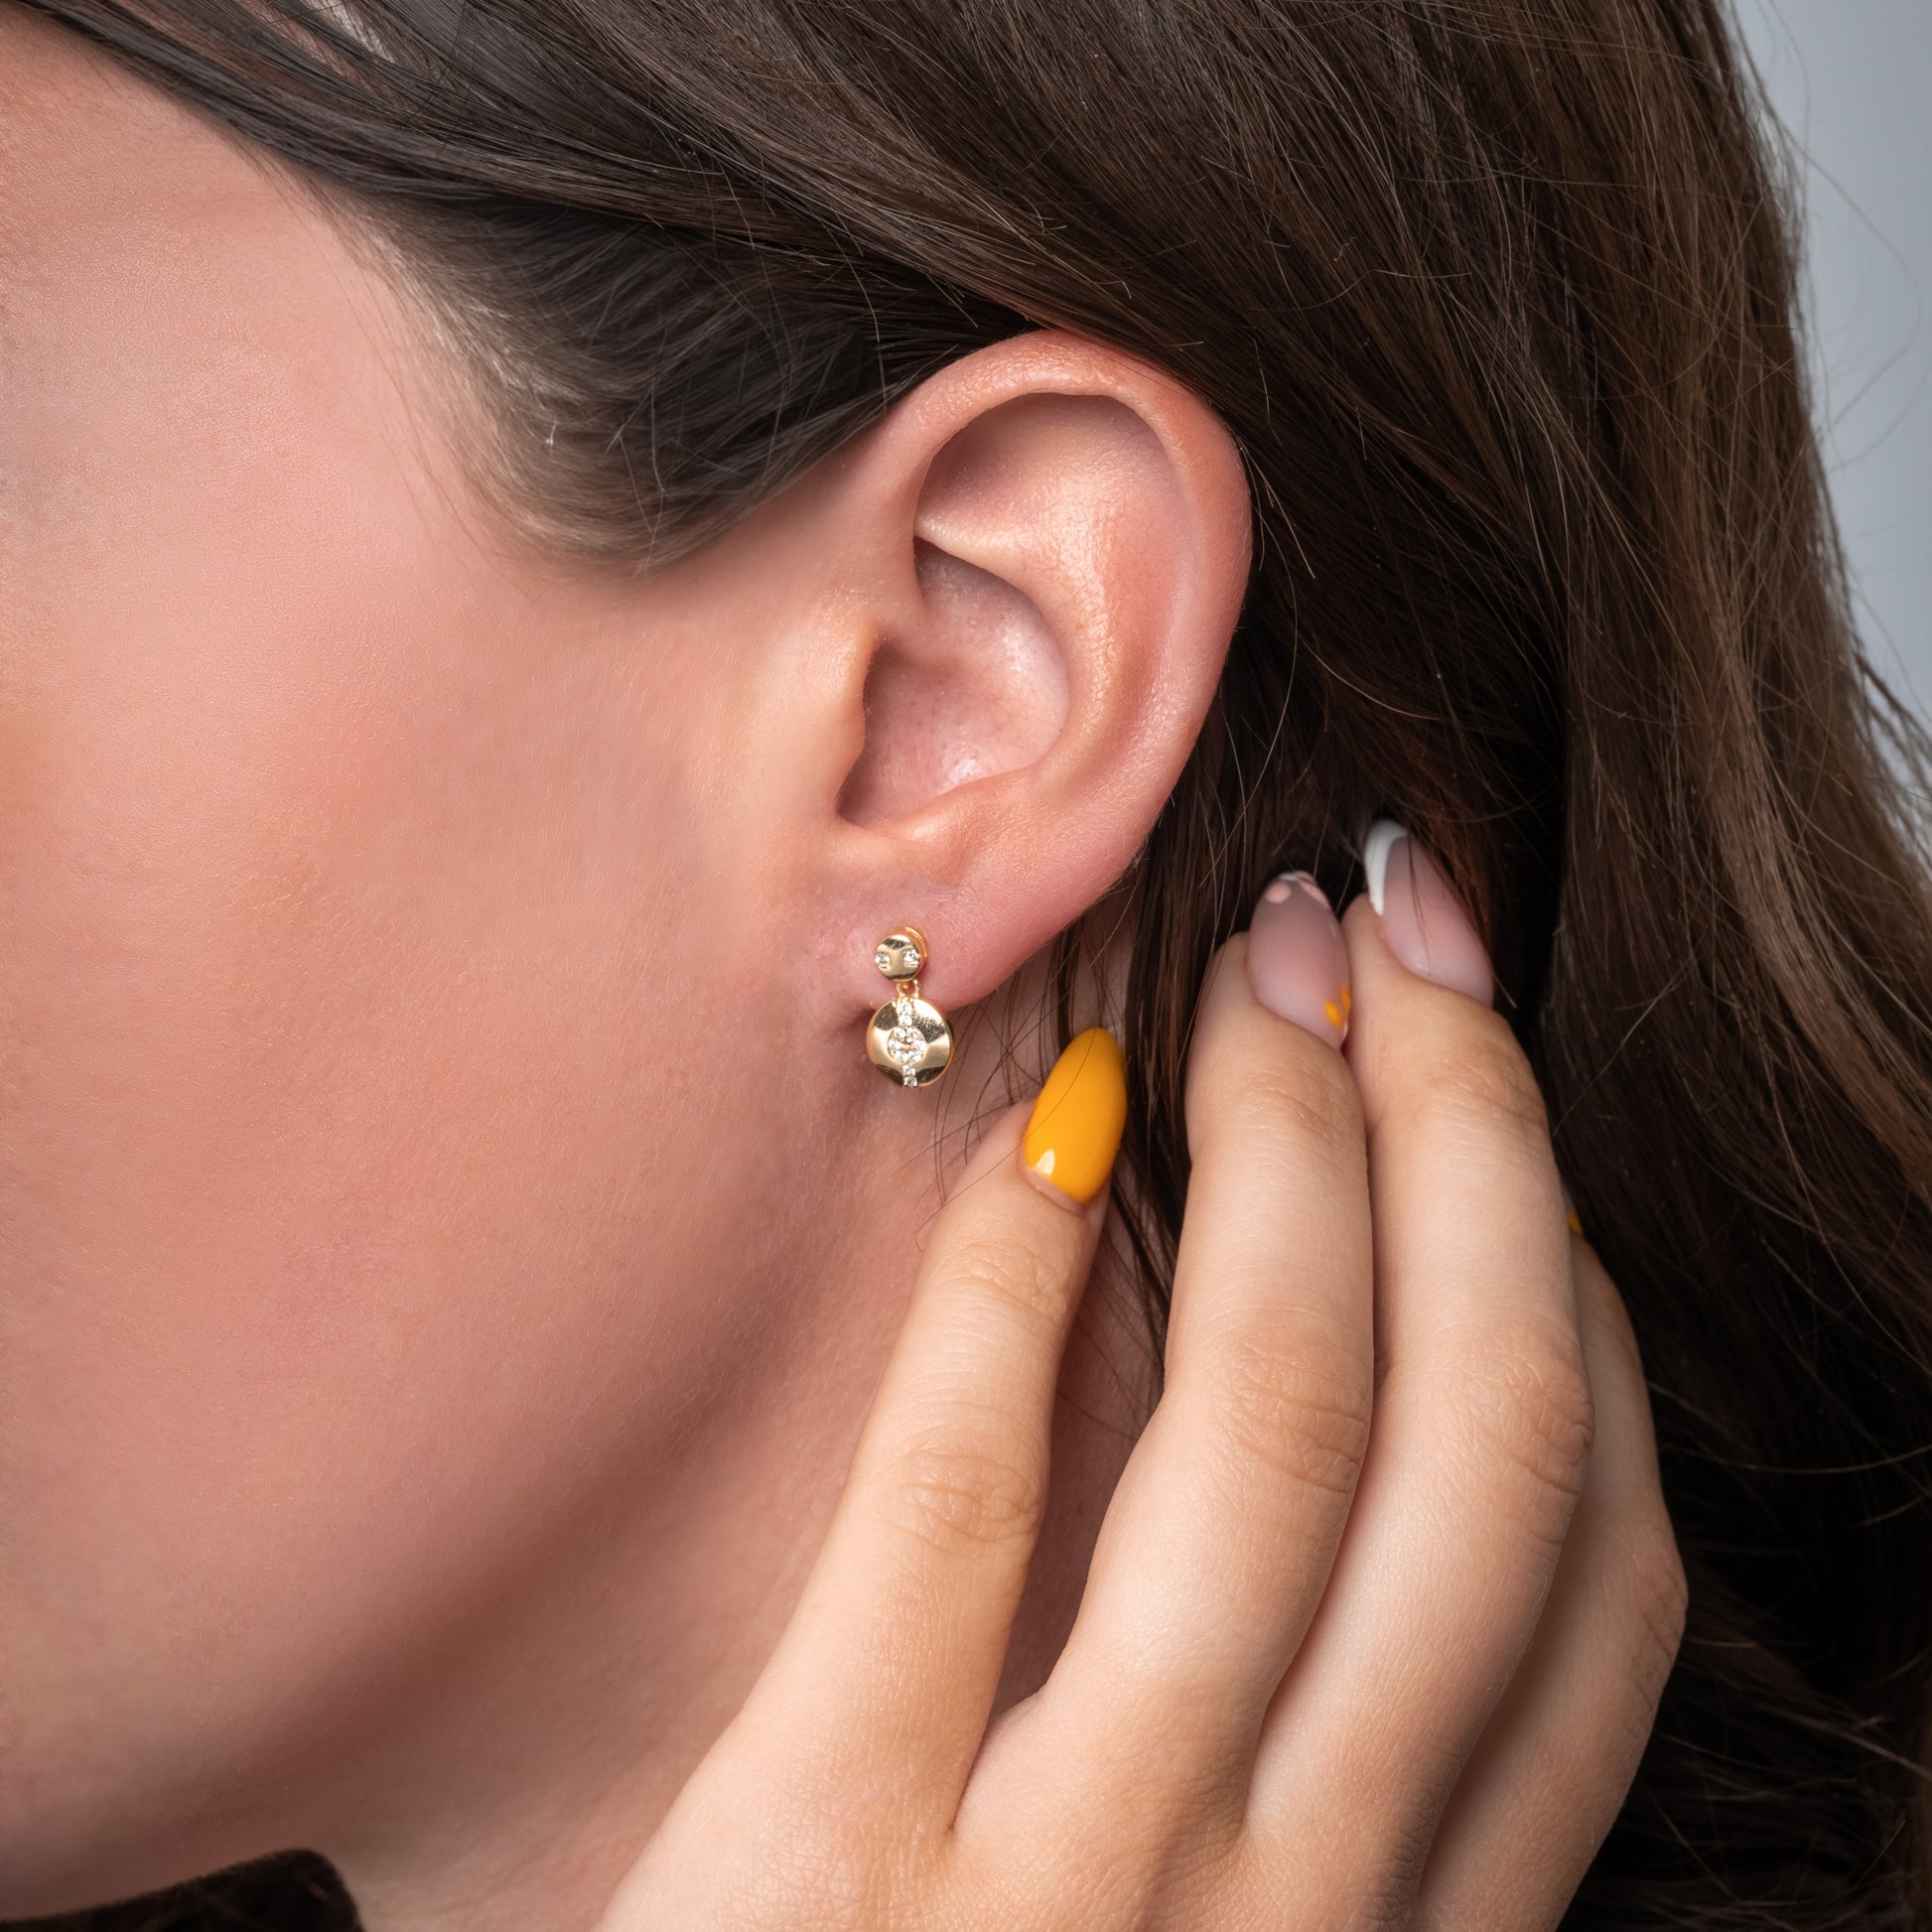 A model showing Hypnotic Solar Gold Earrings in her ear